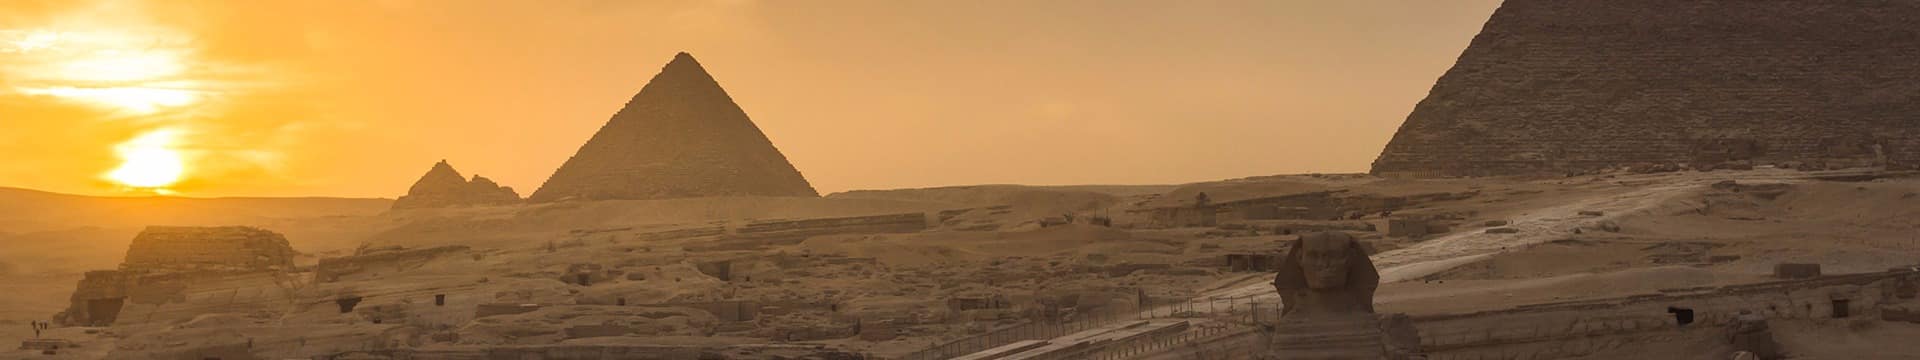 Pirâmides de Gizé, região do Cairo.